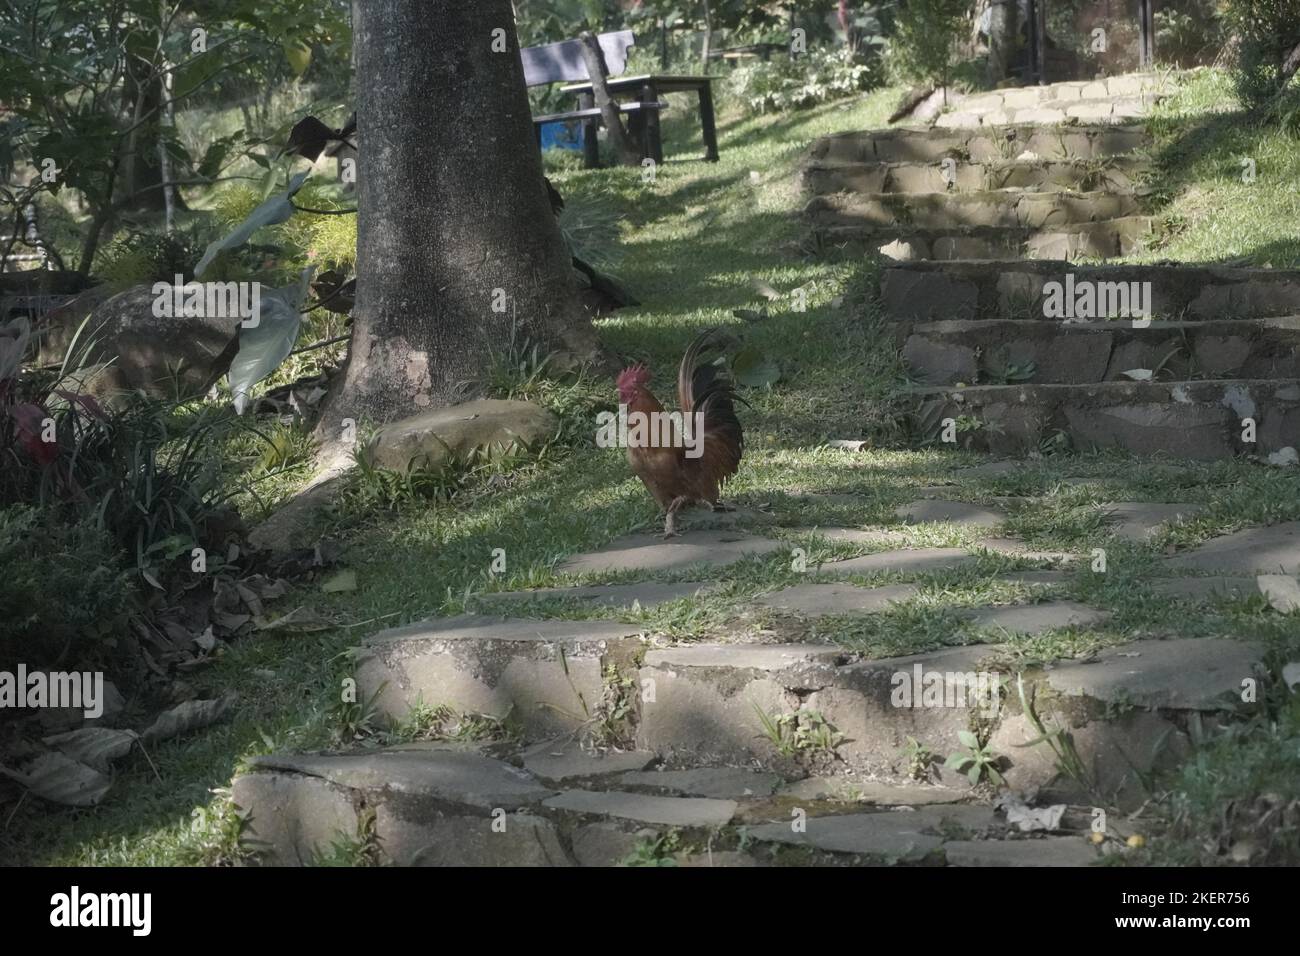 le rooster bantam croque tout en marchant dans le jardin Banque D'Images